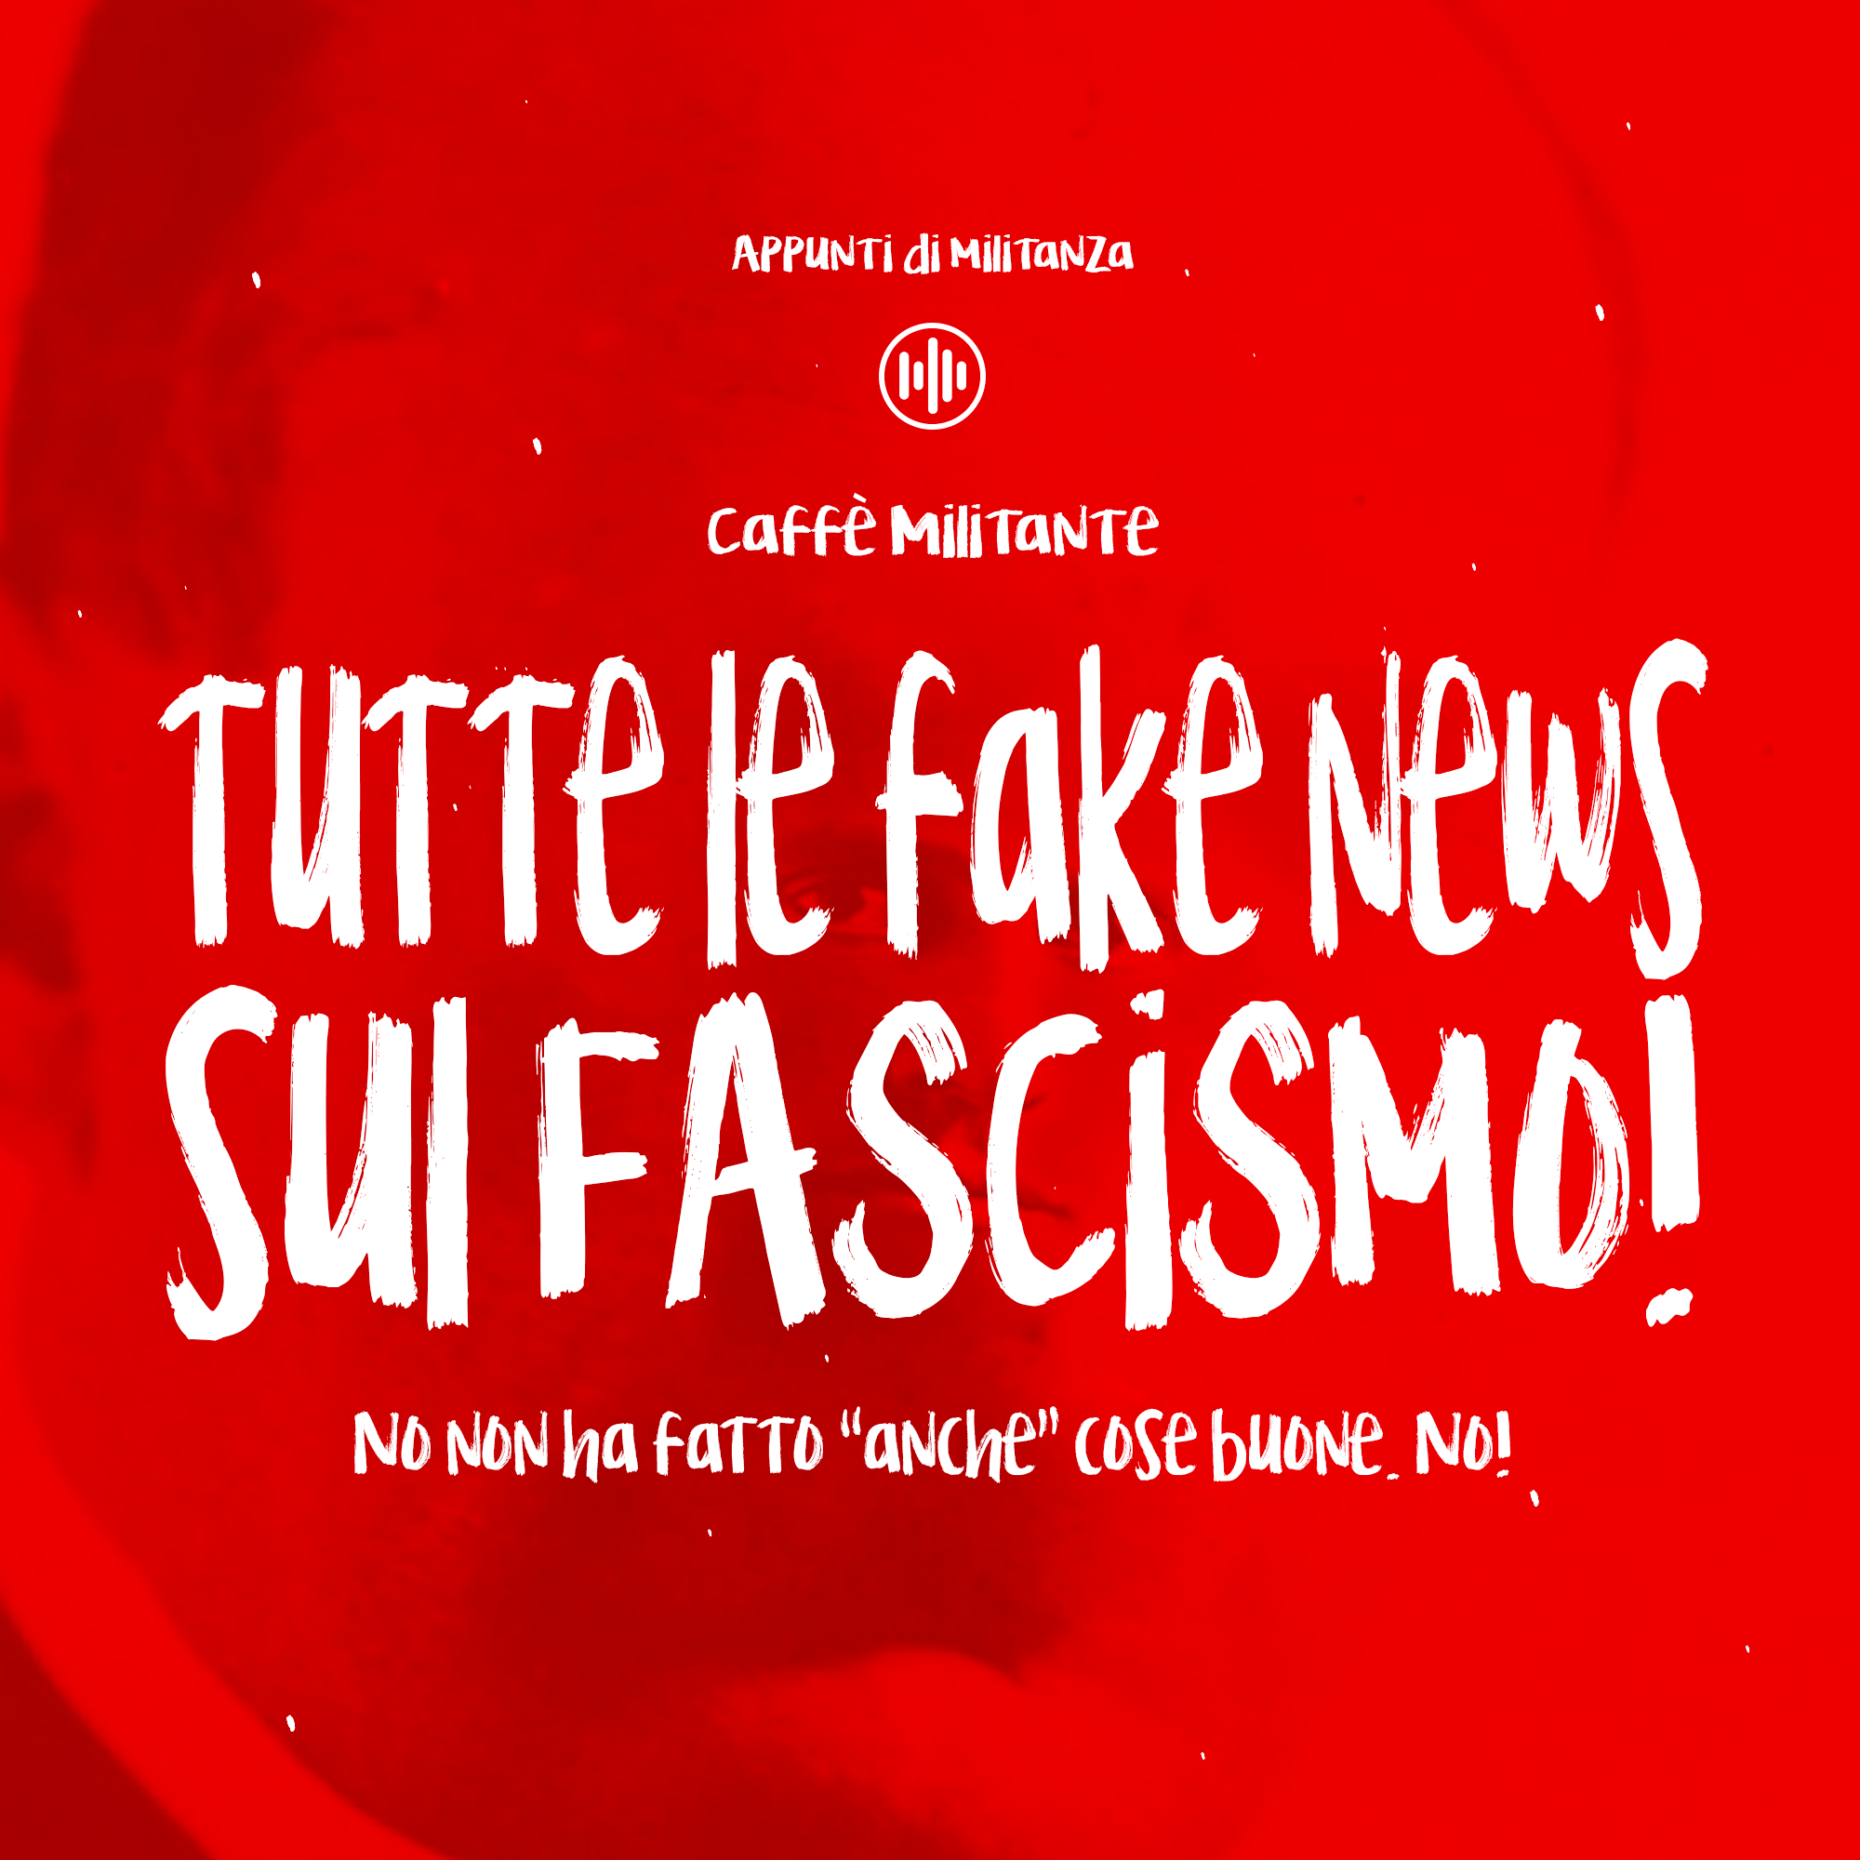 Fake news fascismo